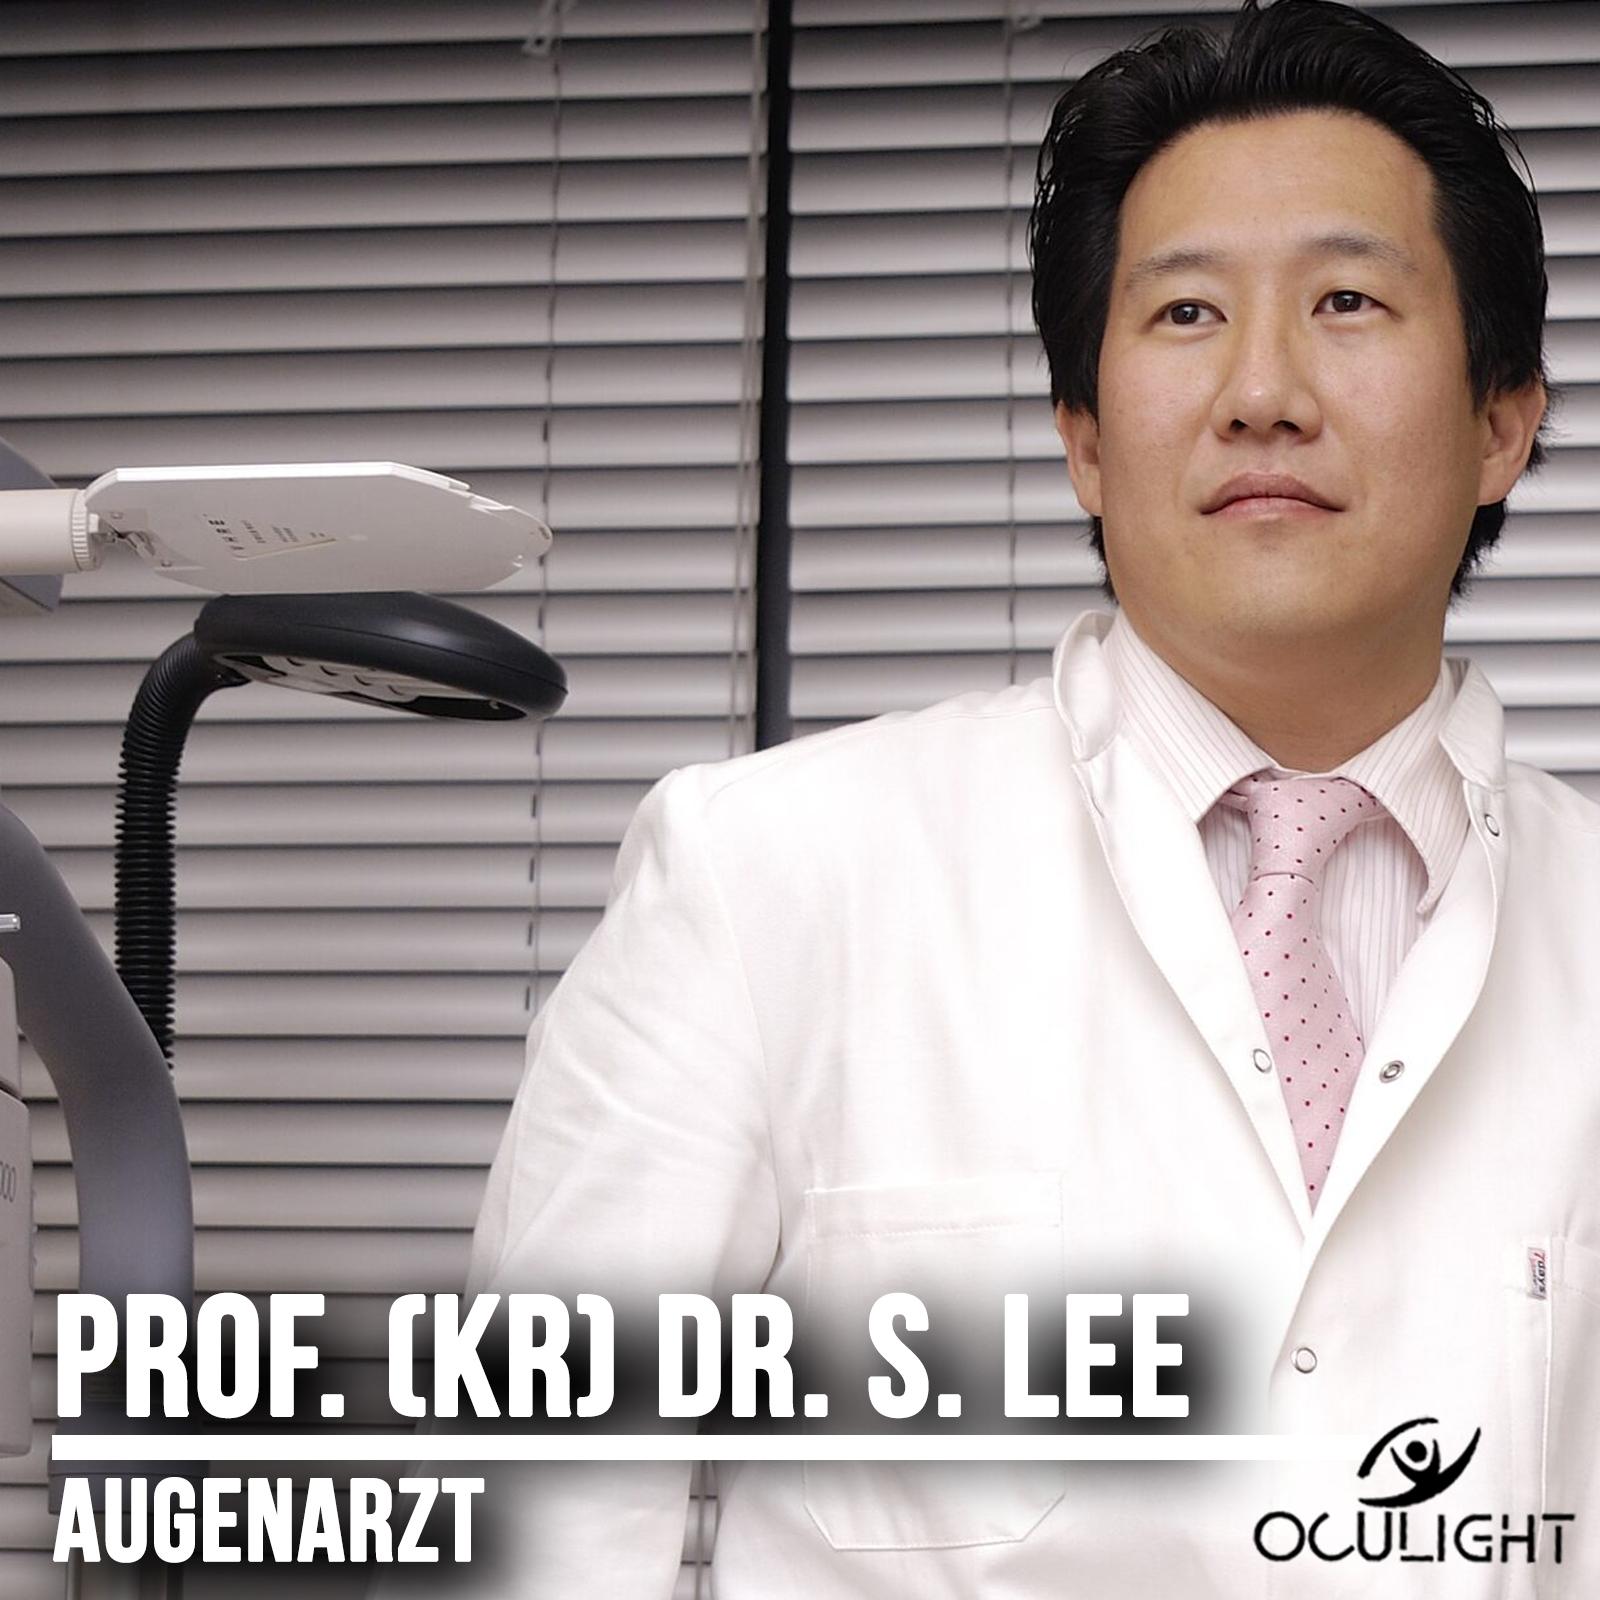 Augenarzt Dr. Sven Lee